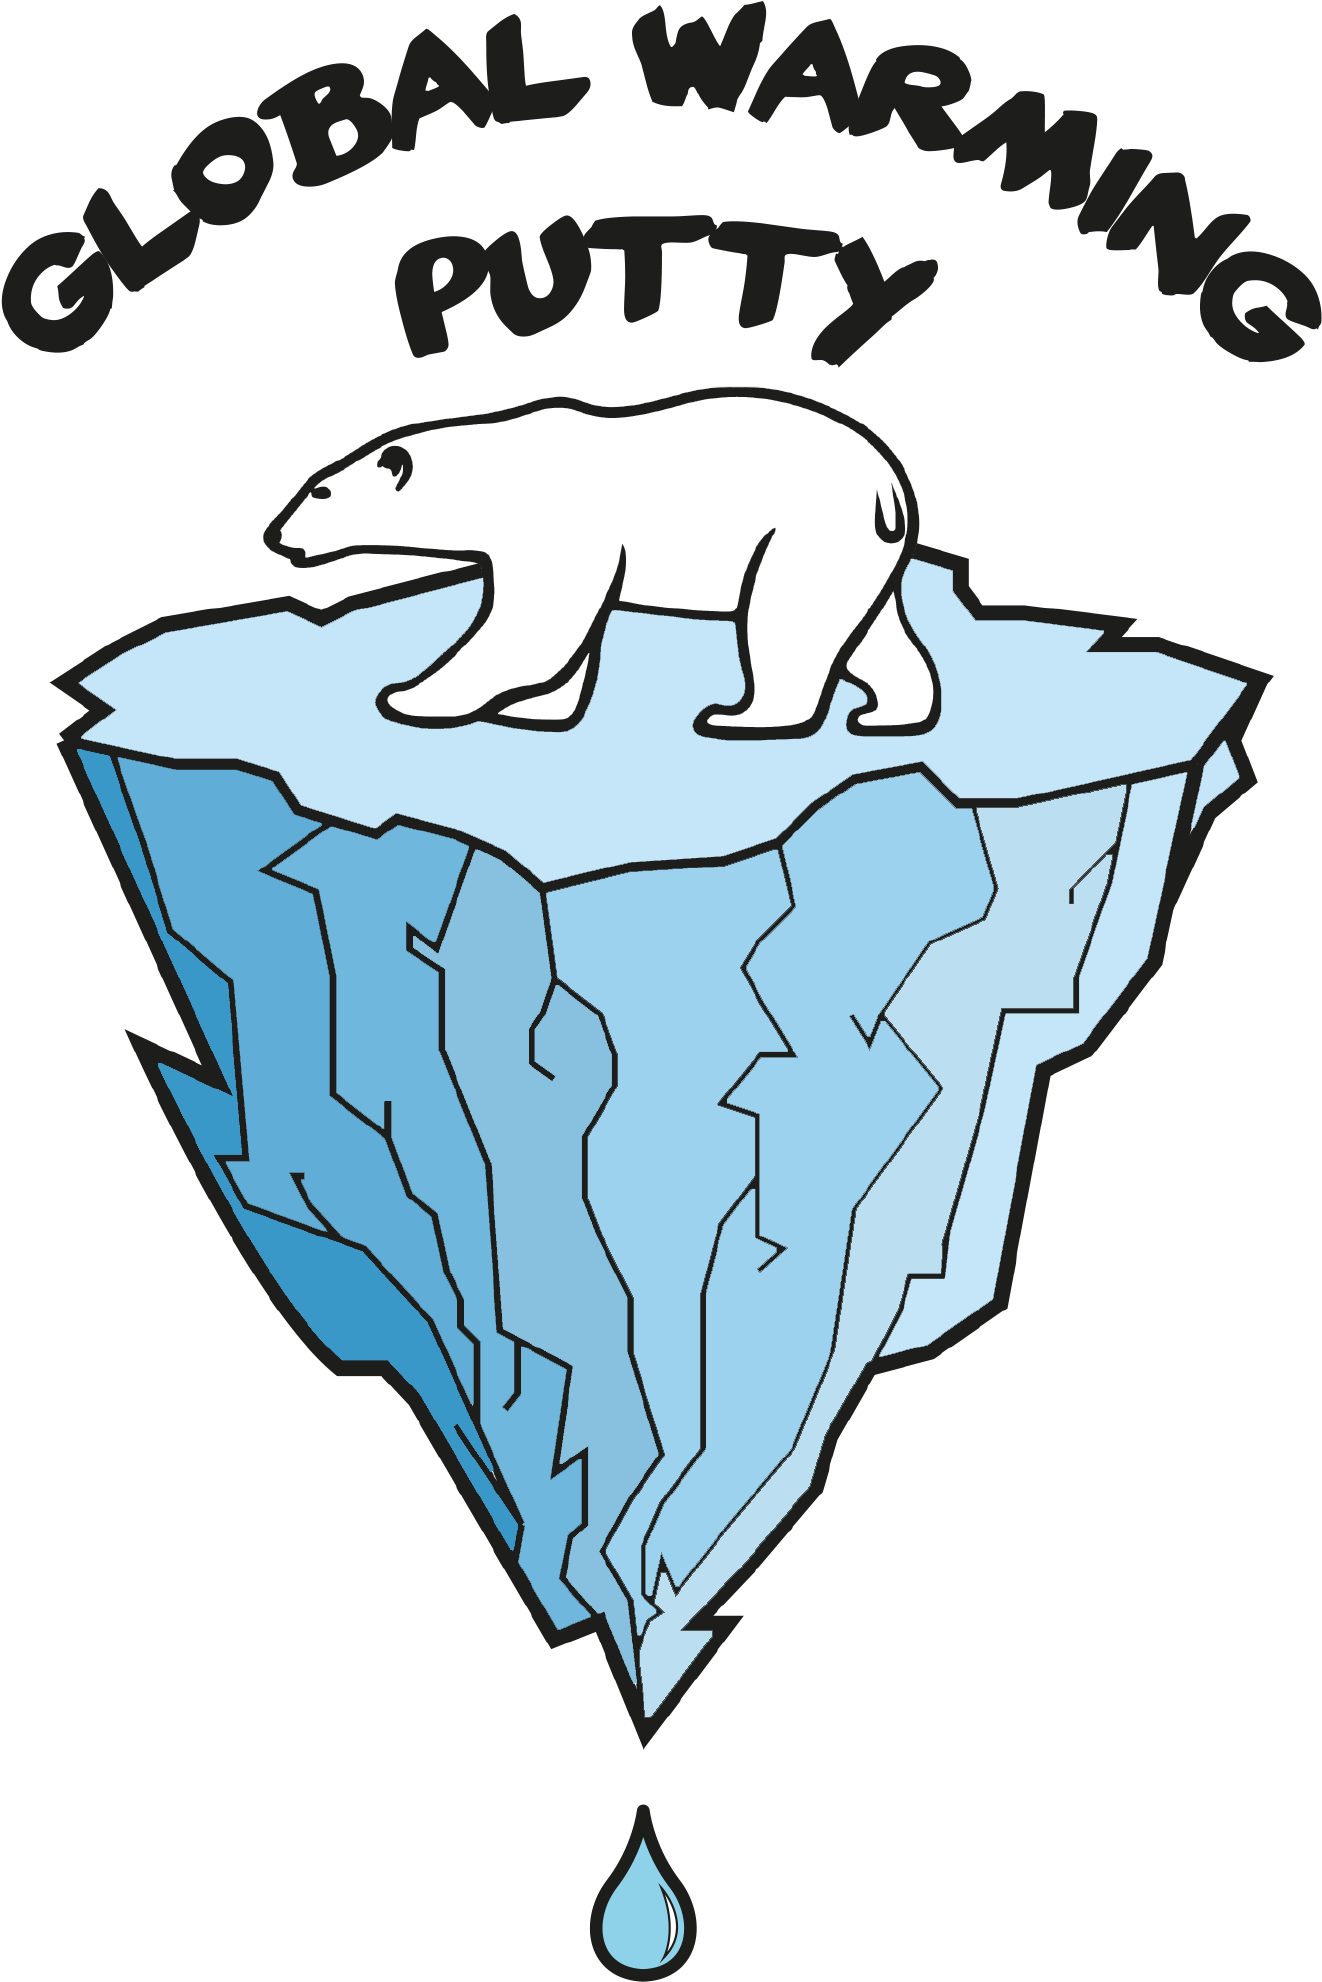 Global Warming Logo - Global Warming (1652x2089)